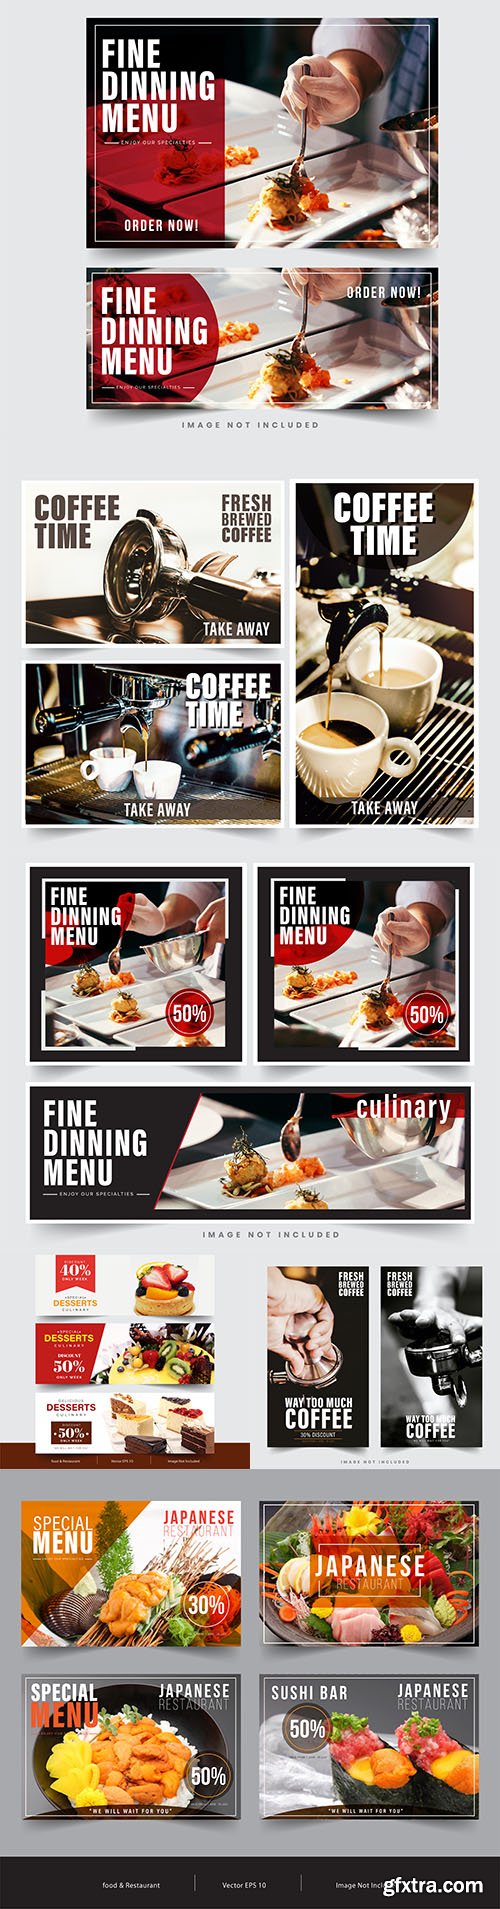 Banner restaurant social networks design template